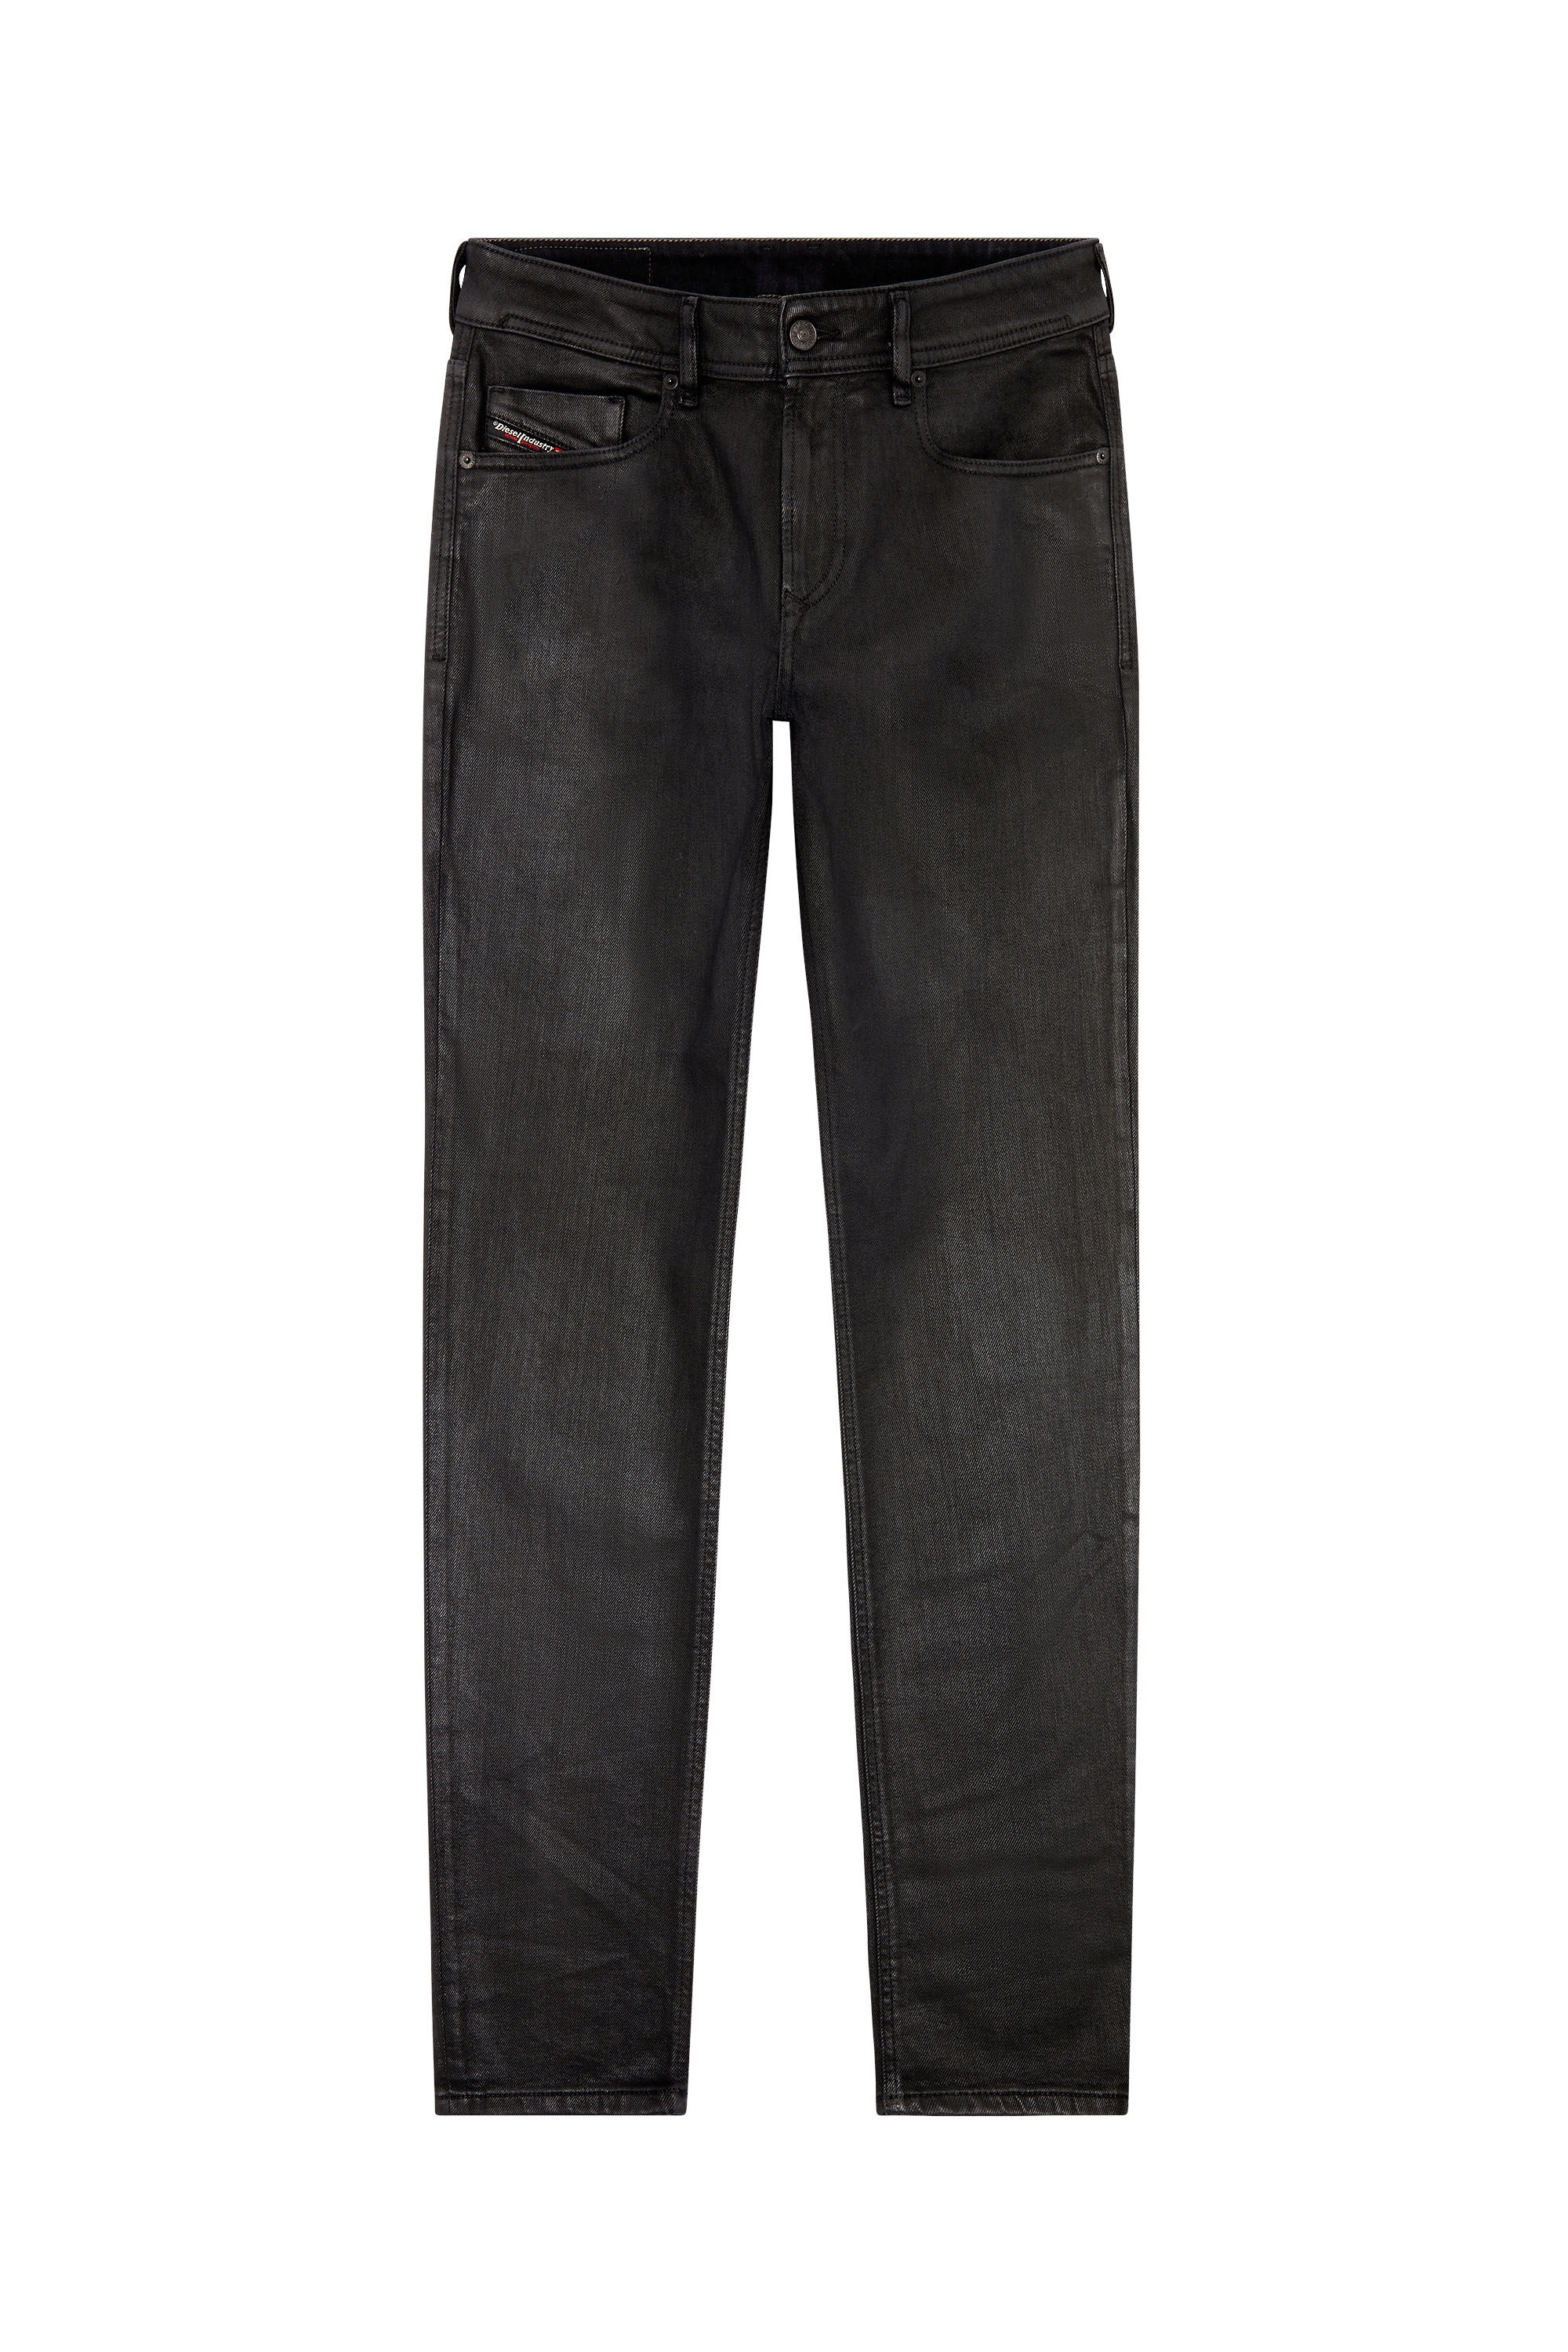 Diesel - Skinny Jeans 1979 Sleenker E09ID, Black/Dark Grey - Image 2